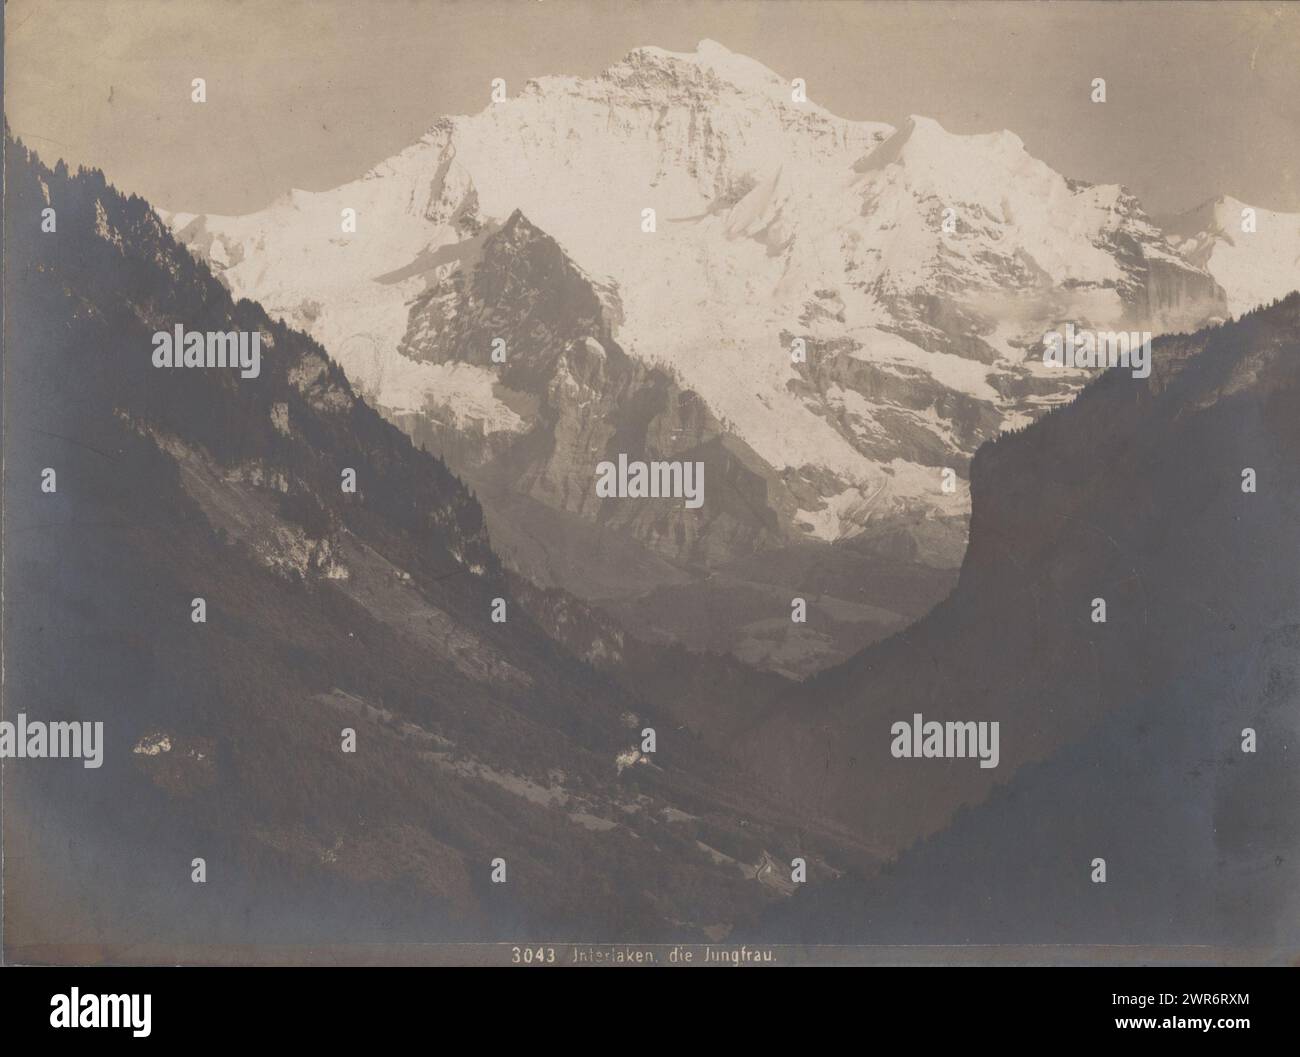 Vue de la Jungfrau, Interlaken, la Jungfrau (titre sur objet), Gebrüder Wehrli, (attribué à), Interlaken, 1897 - 1924, papier baryta, impression argentée gélatineuse, hauteur 163 mm × largeur 218 mm, photographie Banque D'Images